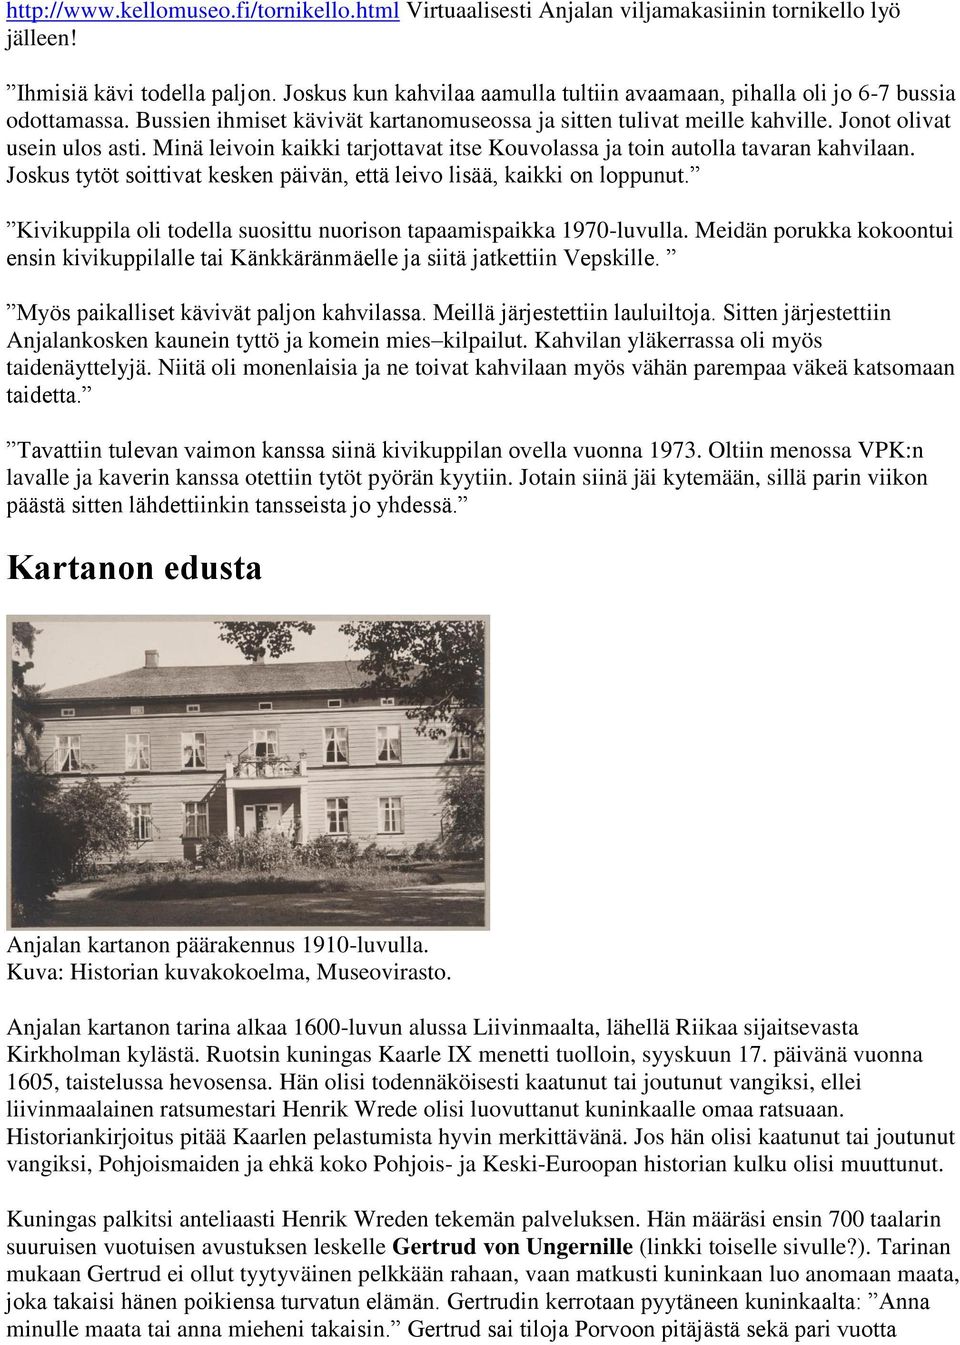 Kartanon Tarinat Anjala Pdf Free Download